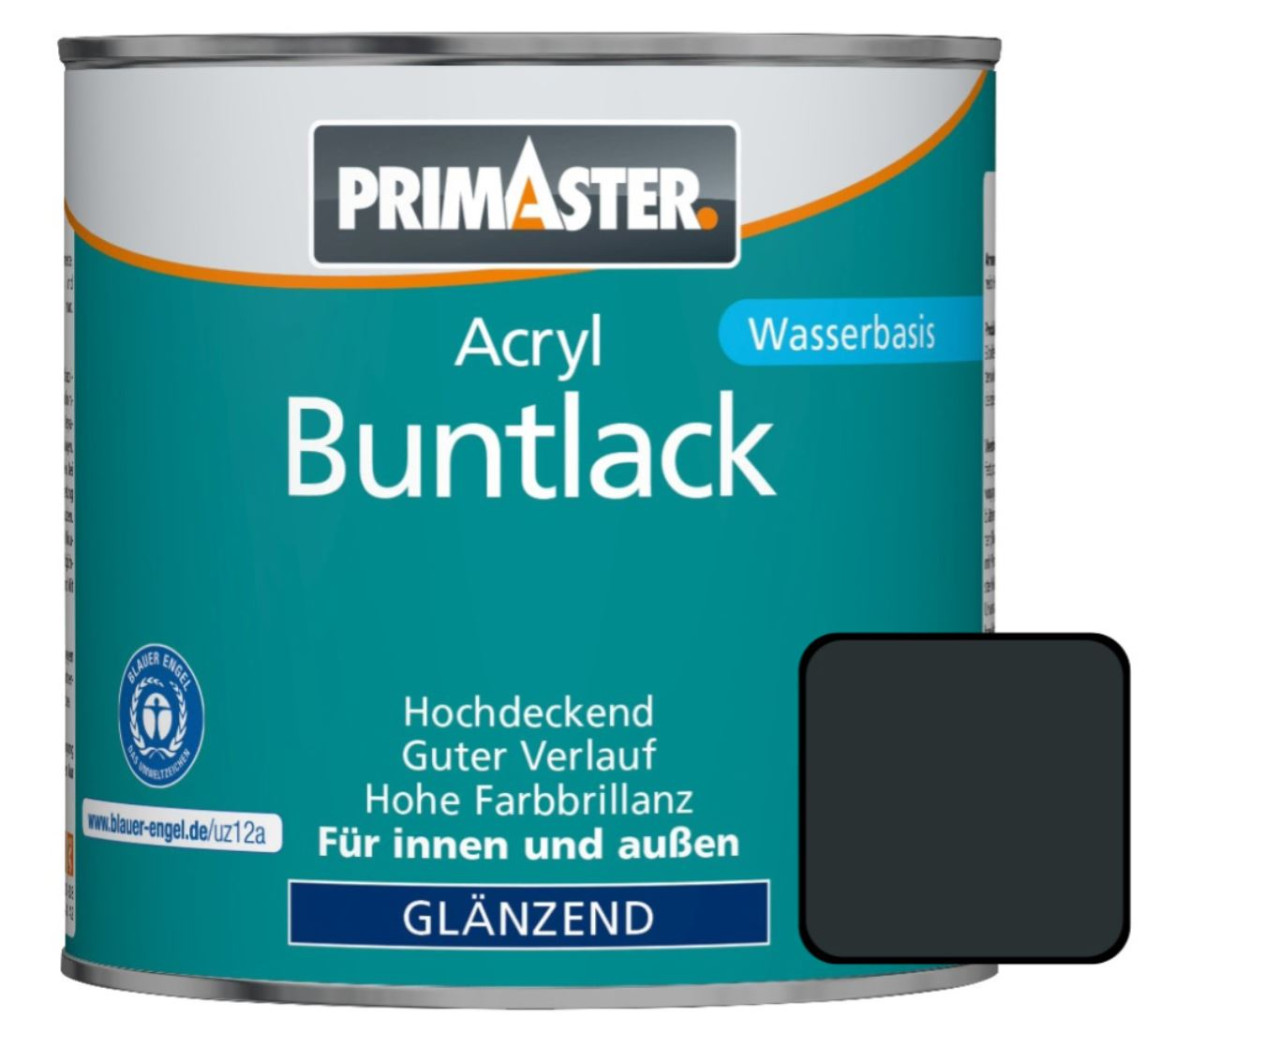 Primaster Acryl Buntlack RAL 7016 750 ml anthrazitgrau glänzend von Primaster